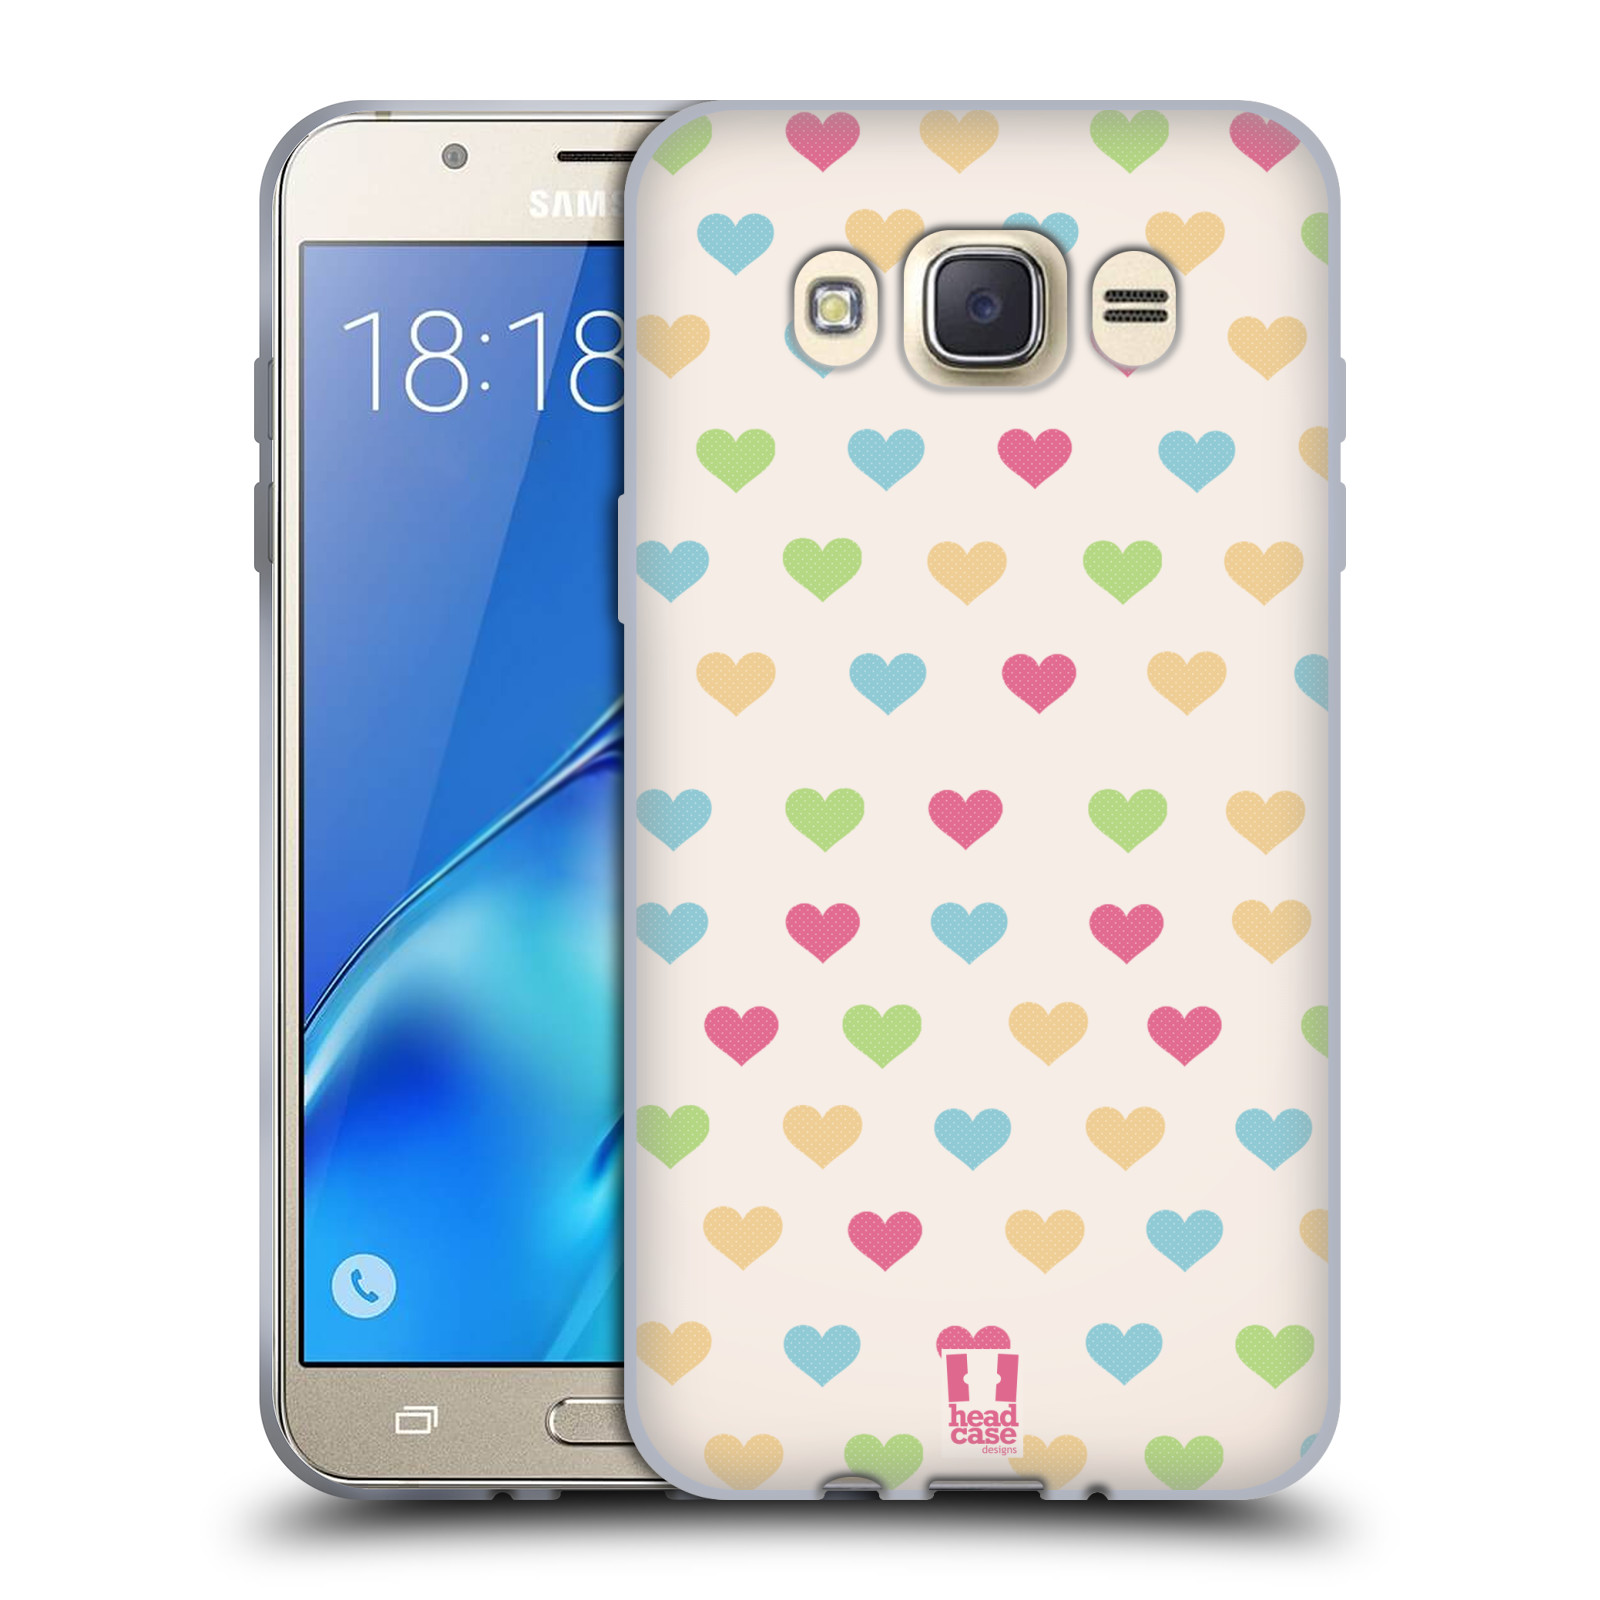 HEAD CASE silikonový obal, kryt na mobil Samsung Galaxy J7 2016 (J710, J710F) vzor Srdíčka MALÁ BAREVNÁ SRDÍČKA